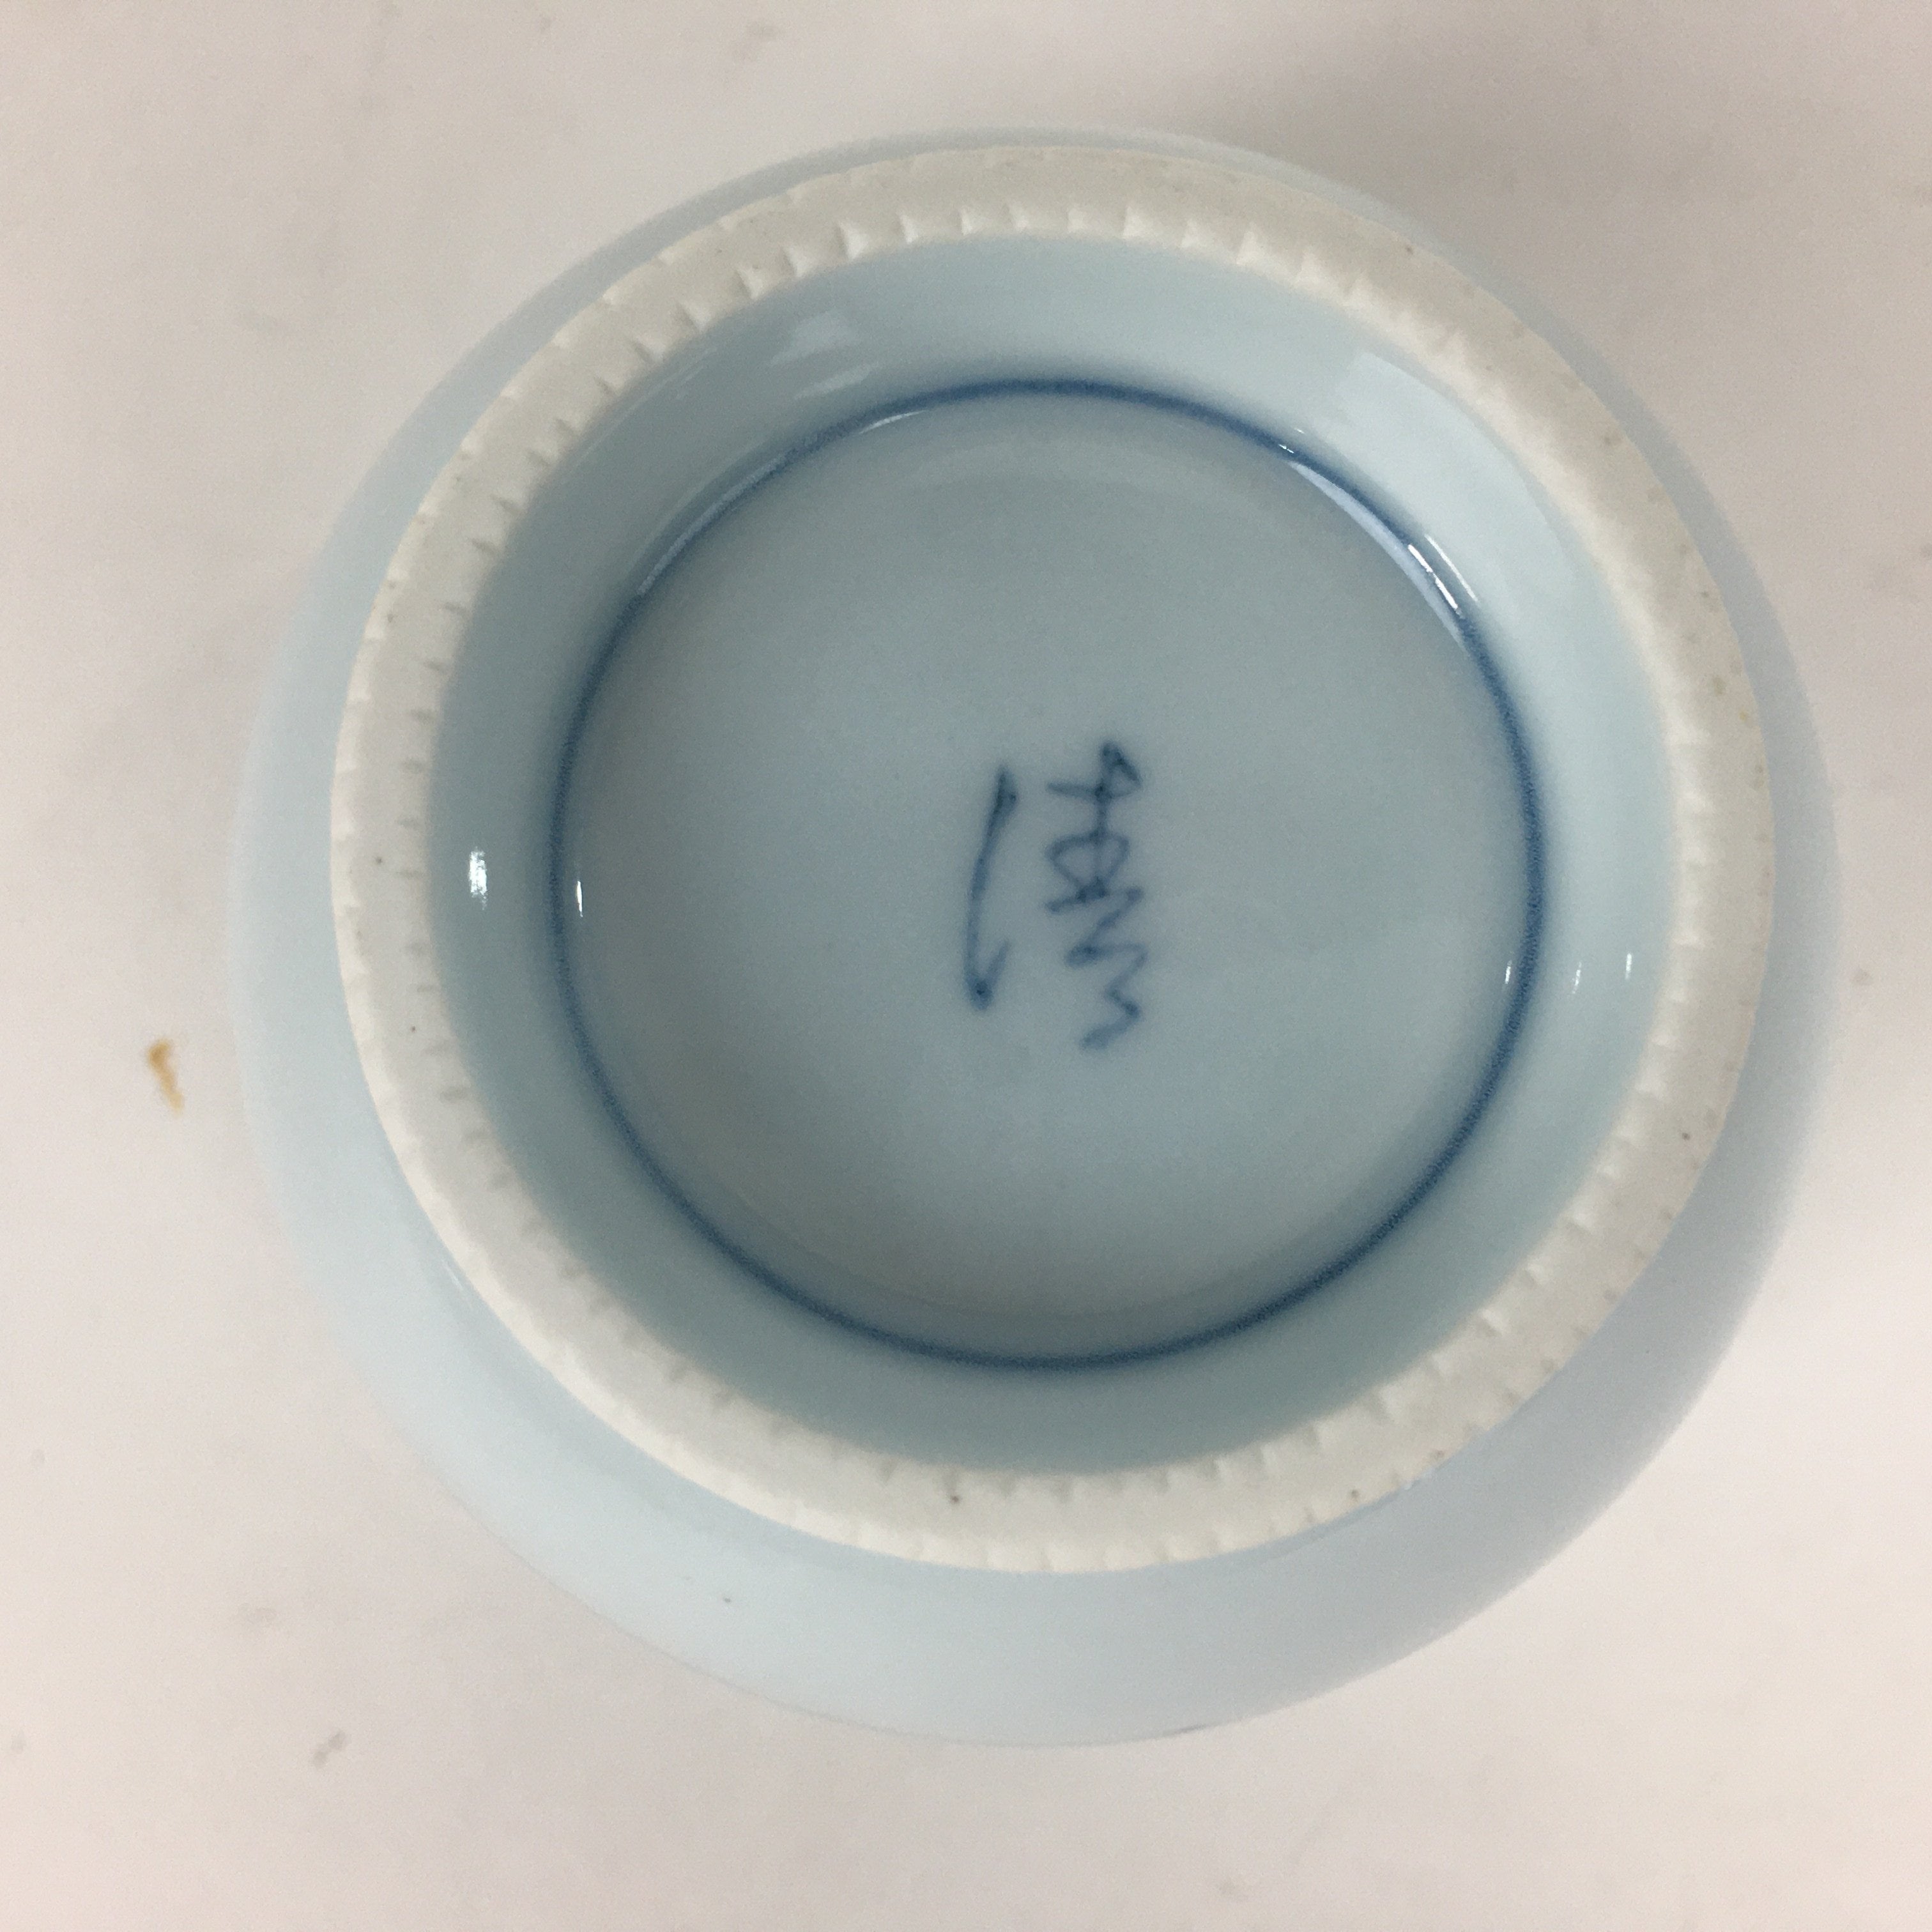 Japanese Porcelain Teacup Vtg Light Blue Small Bird Design Inside Sencha QT129